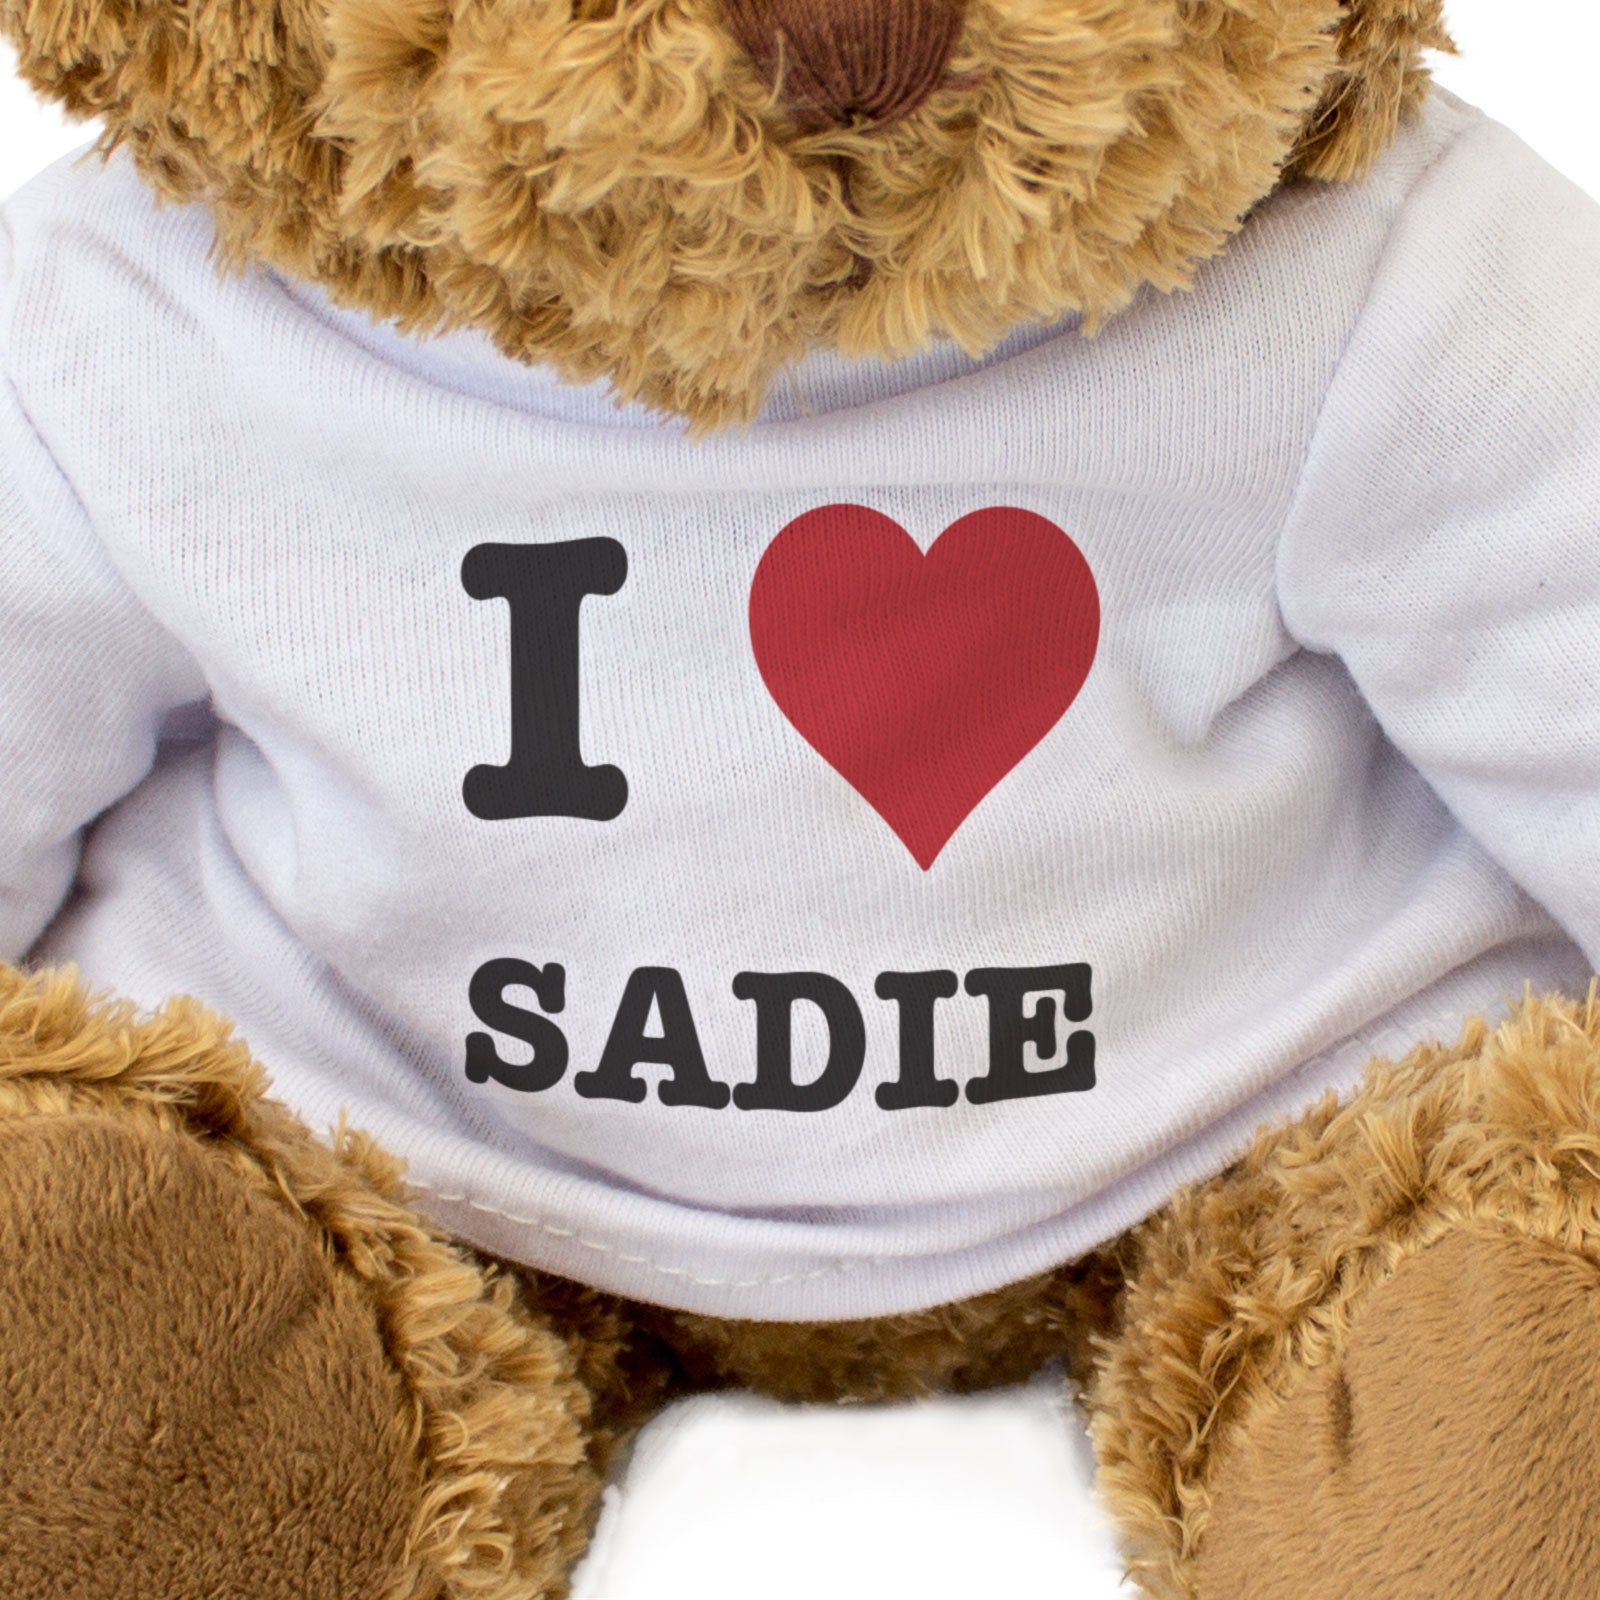 I Love Sadie - Teddy Bear